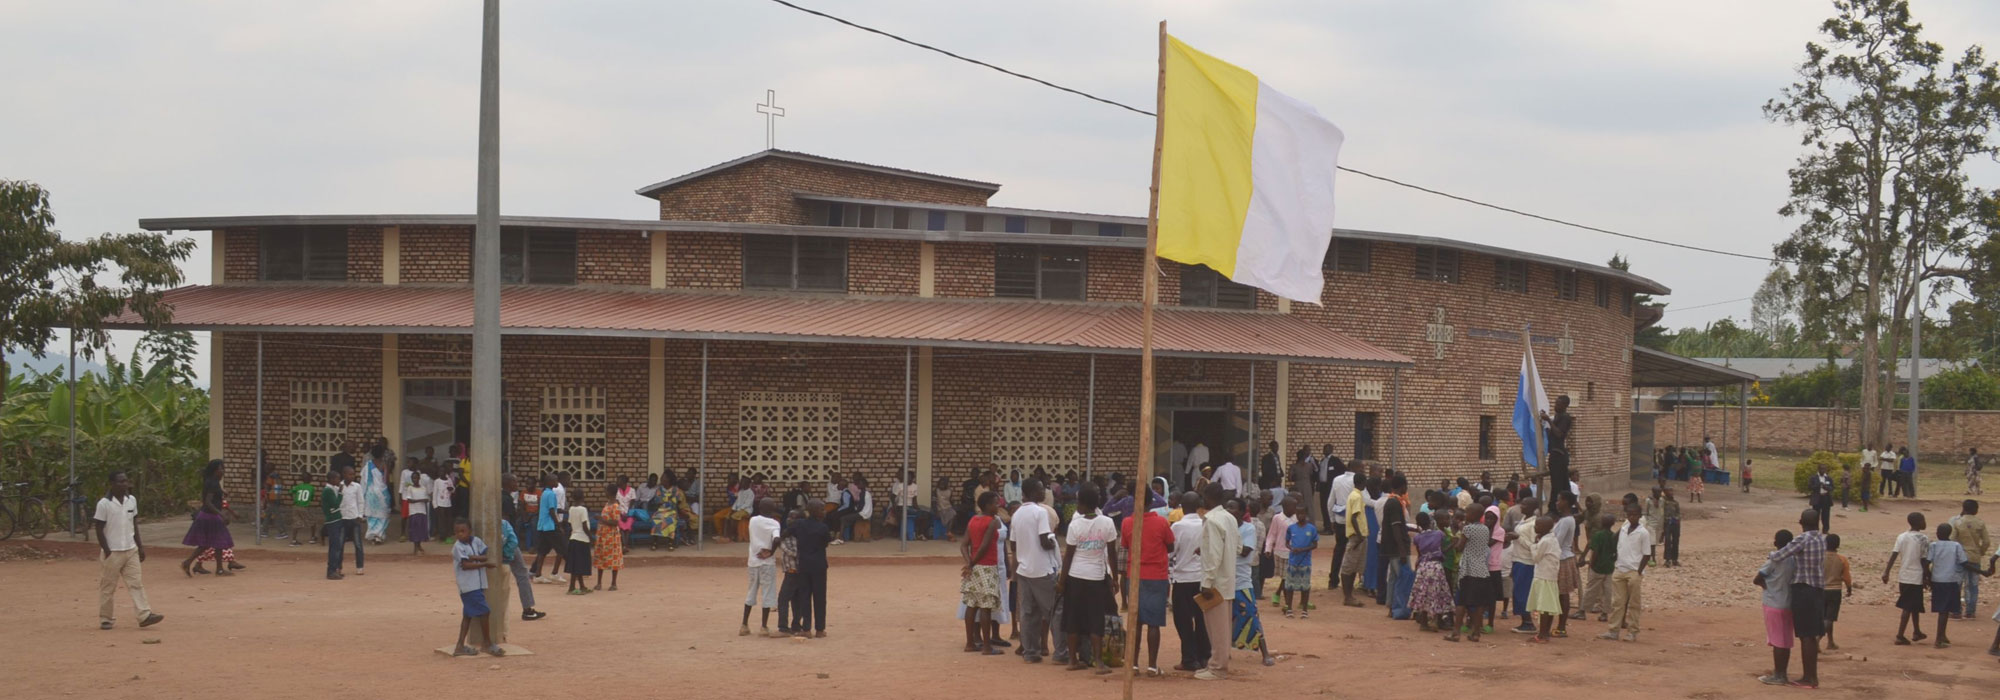 Partnergemeinde Kiruhura in Ruanda